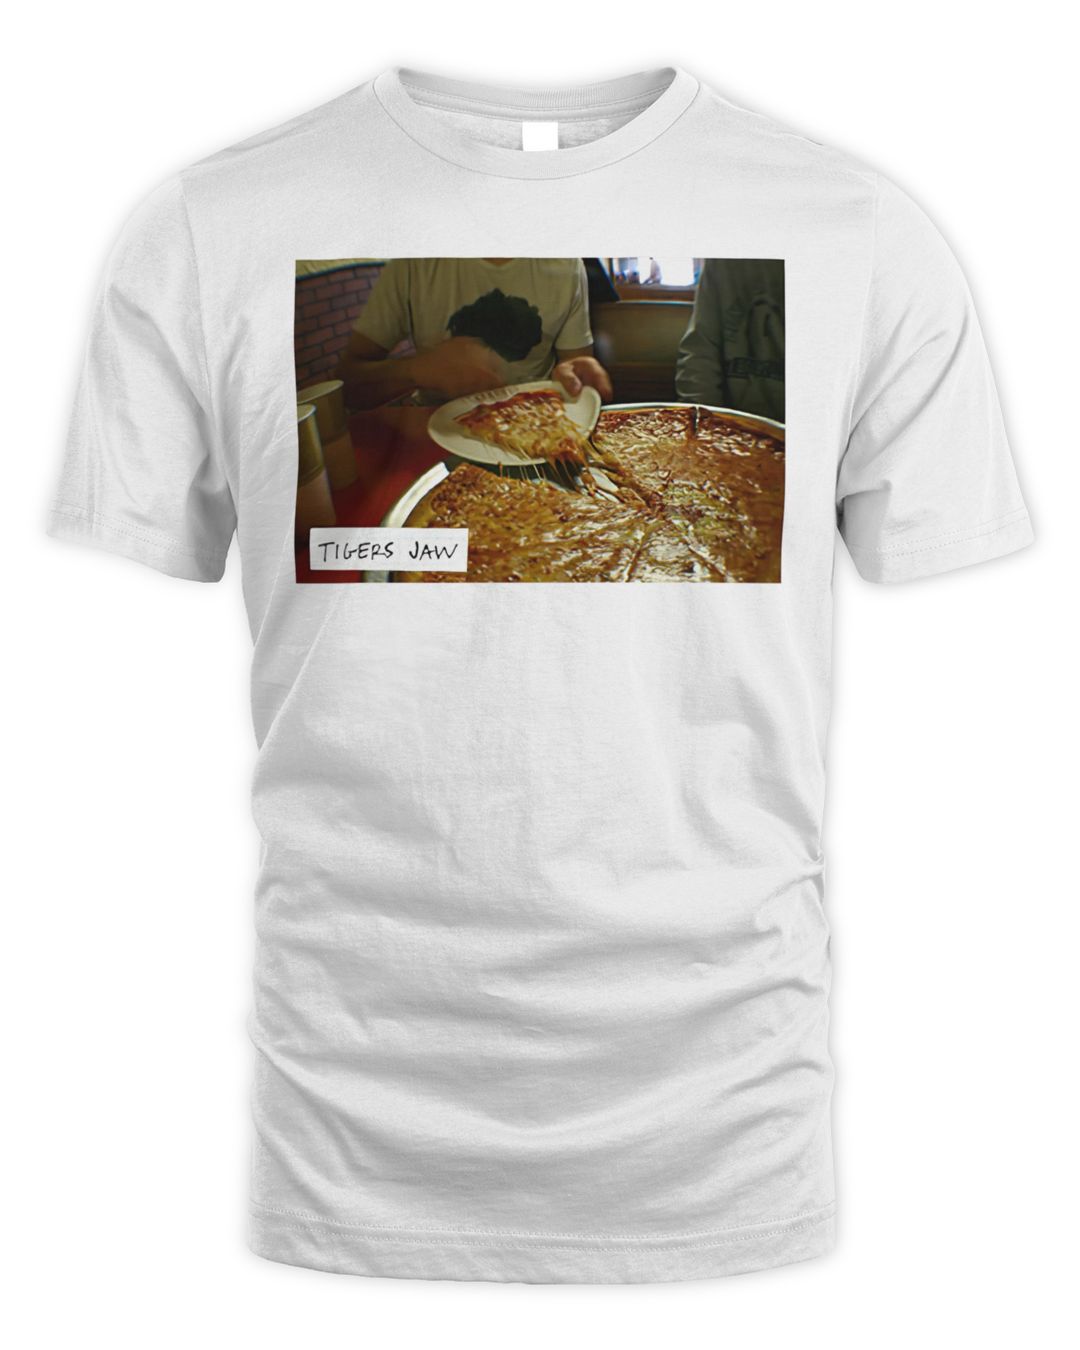 Tigers Jaw Merch Pizza Shirt